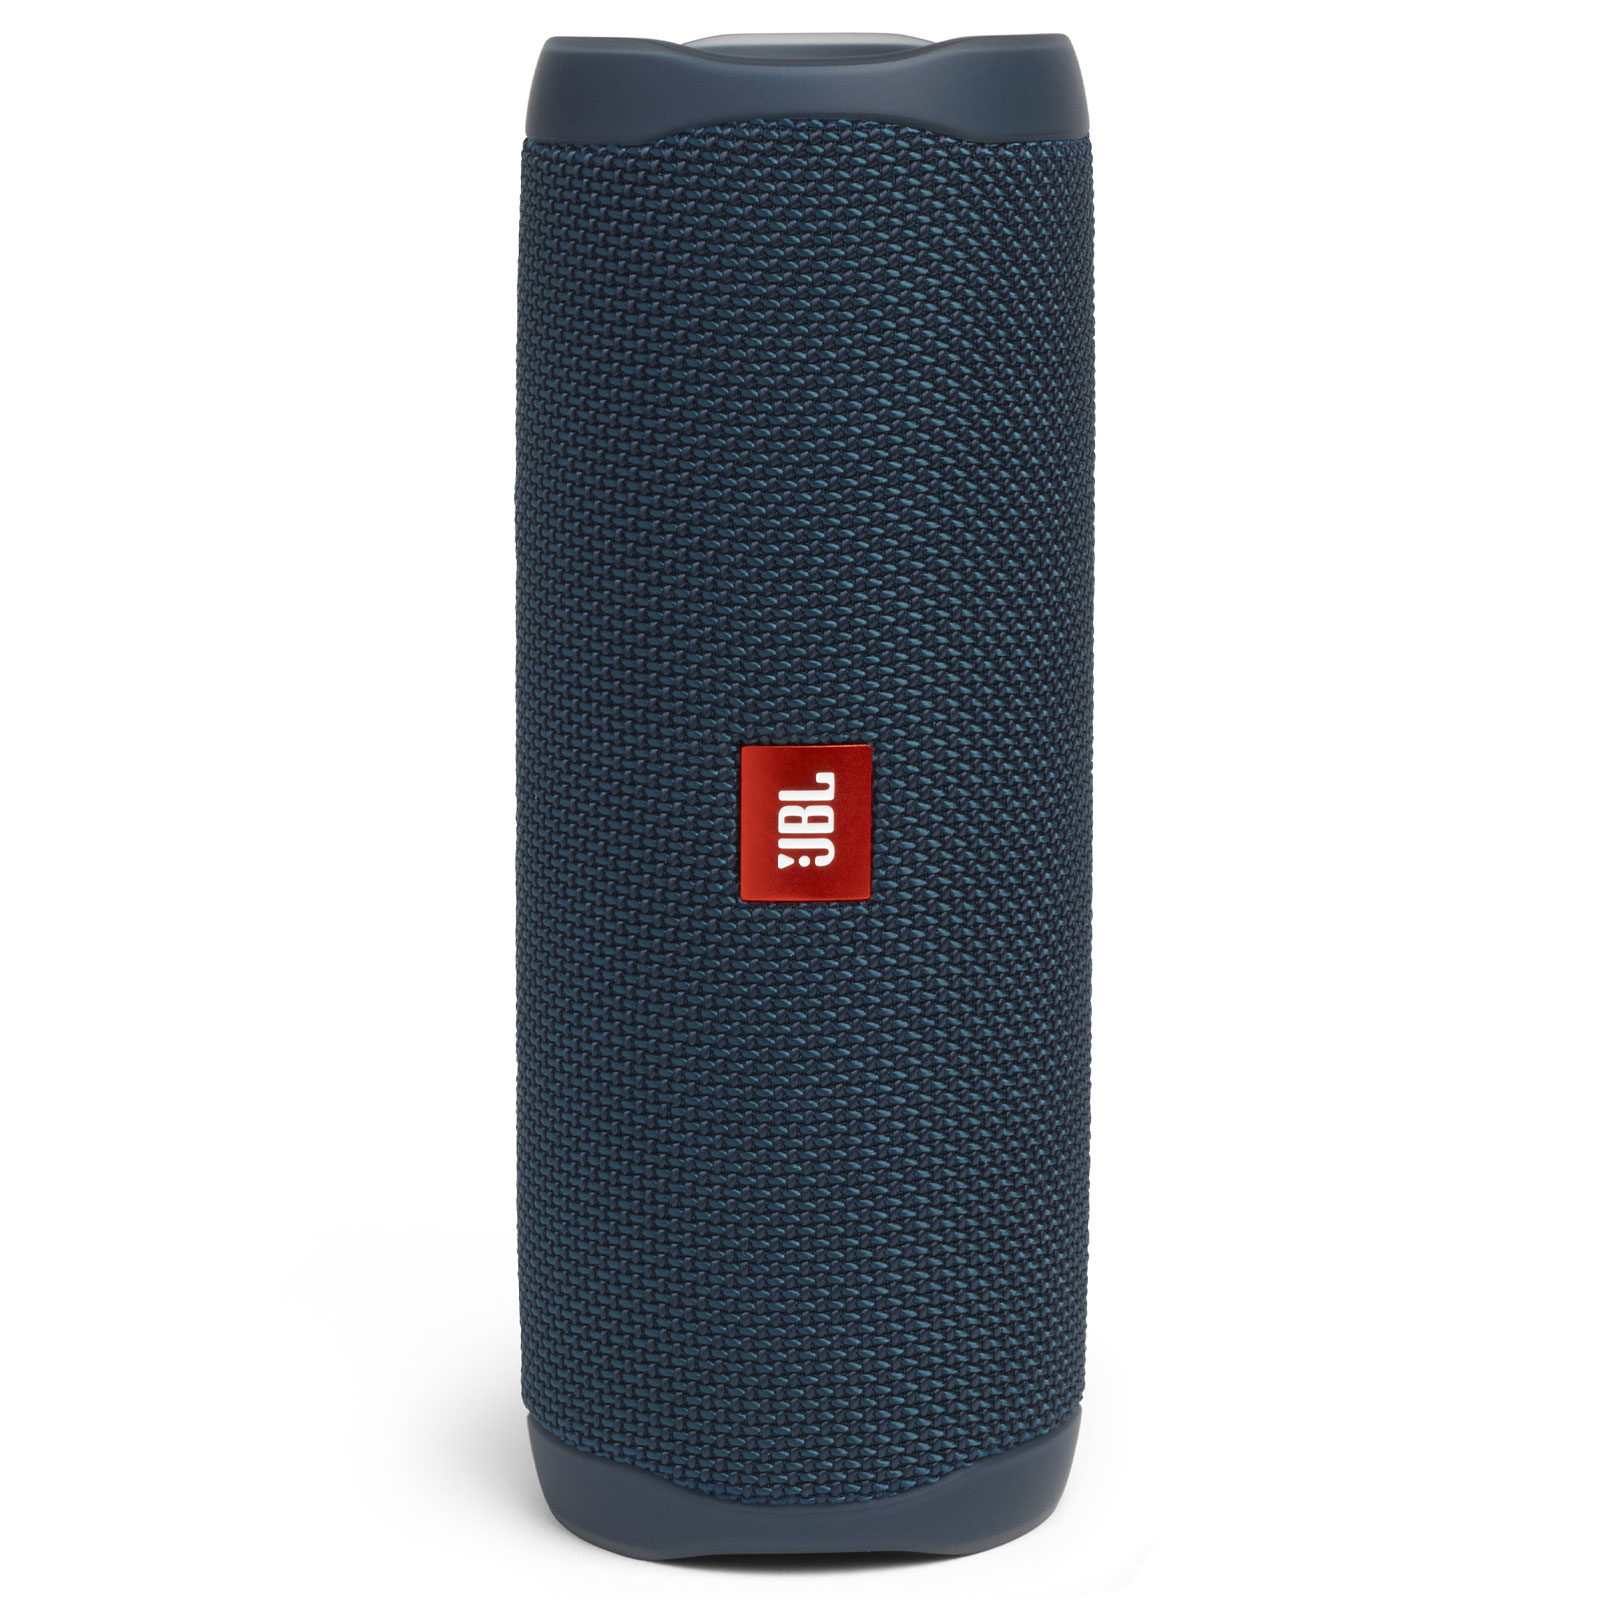 jbl-go-3-portable-bluetooth-speaker-black-jblgo3blkam-b-h